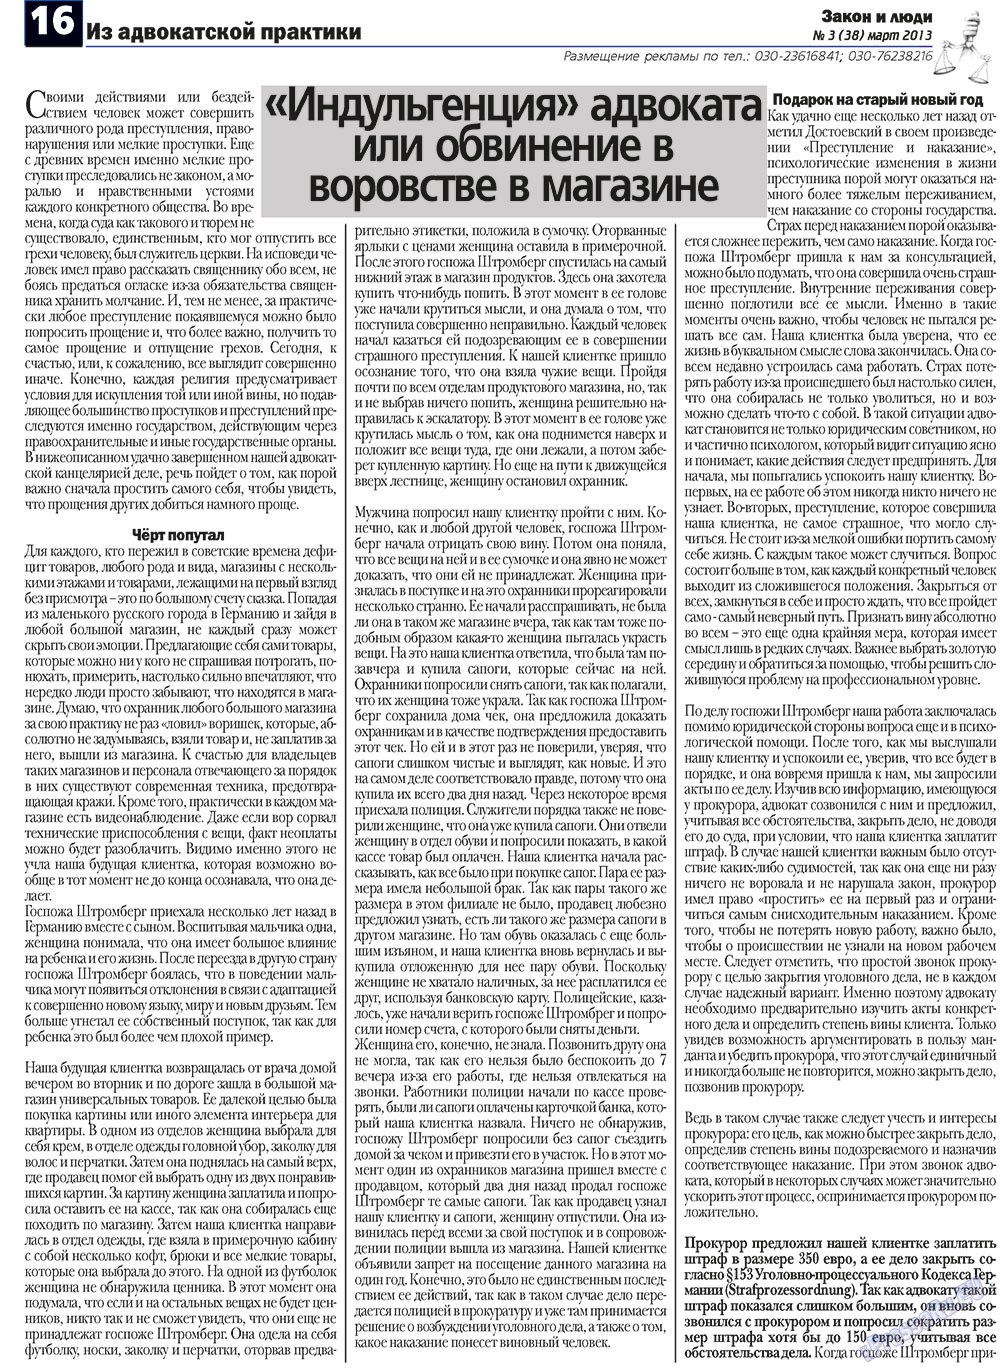 Закон и люди (газета). 2013 год, номер 3, стр. 16